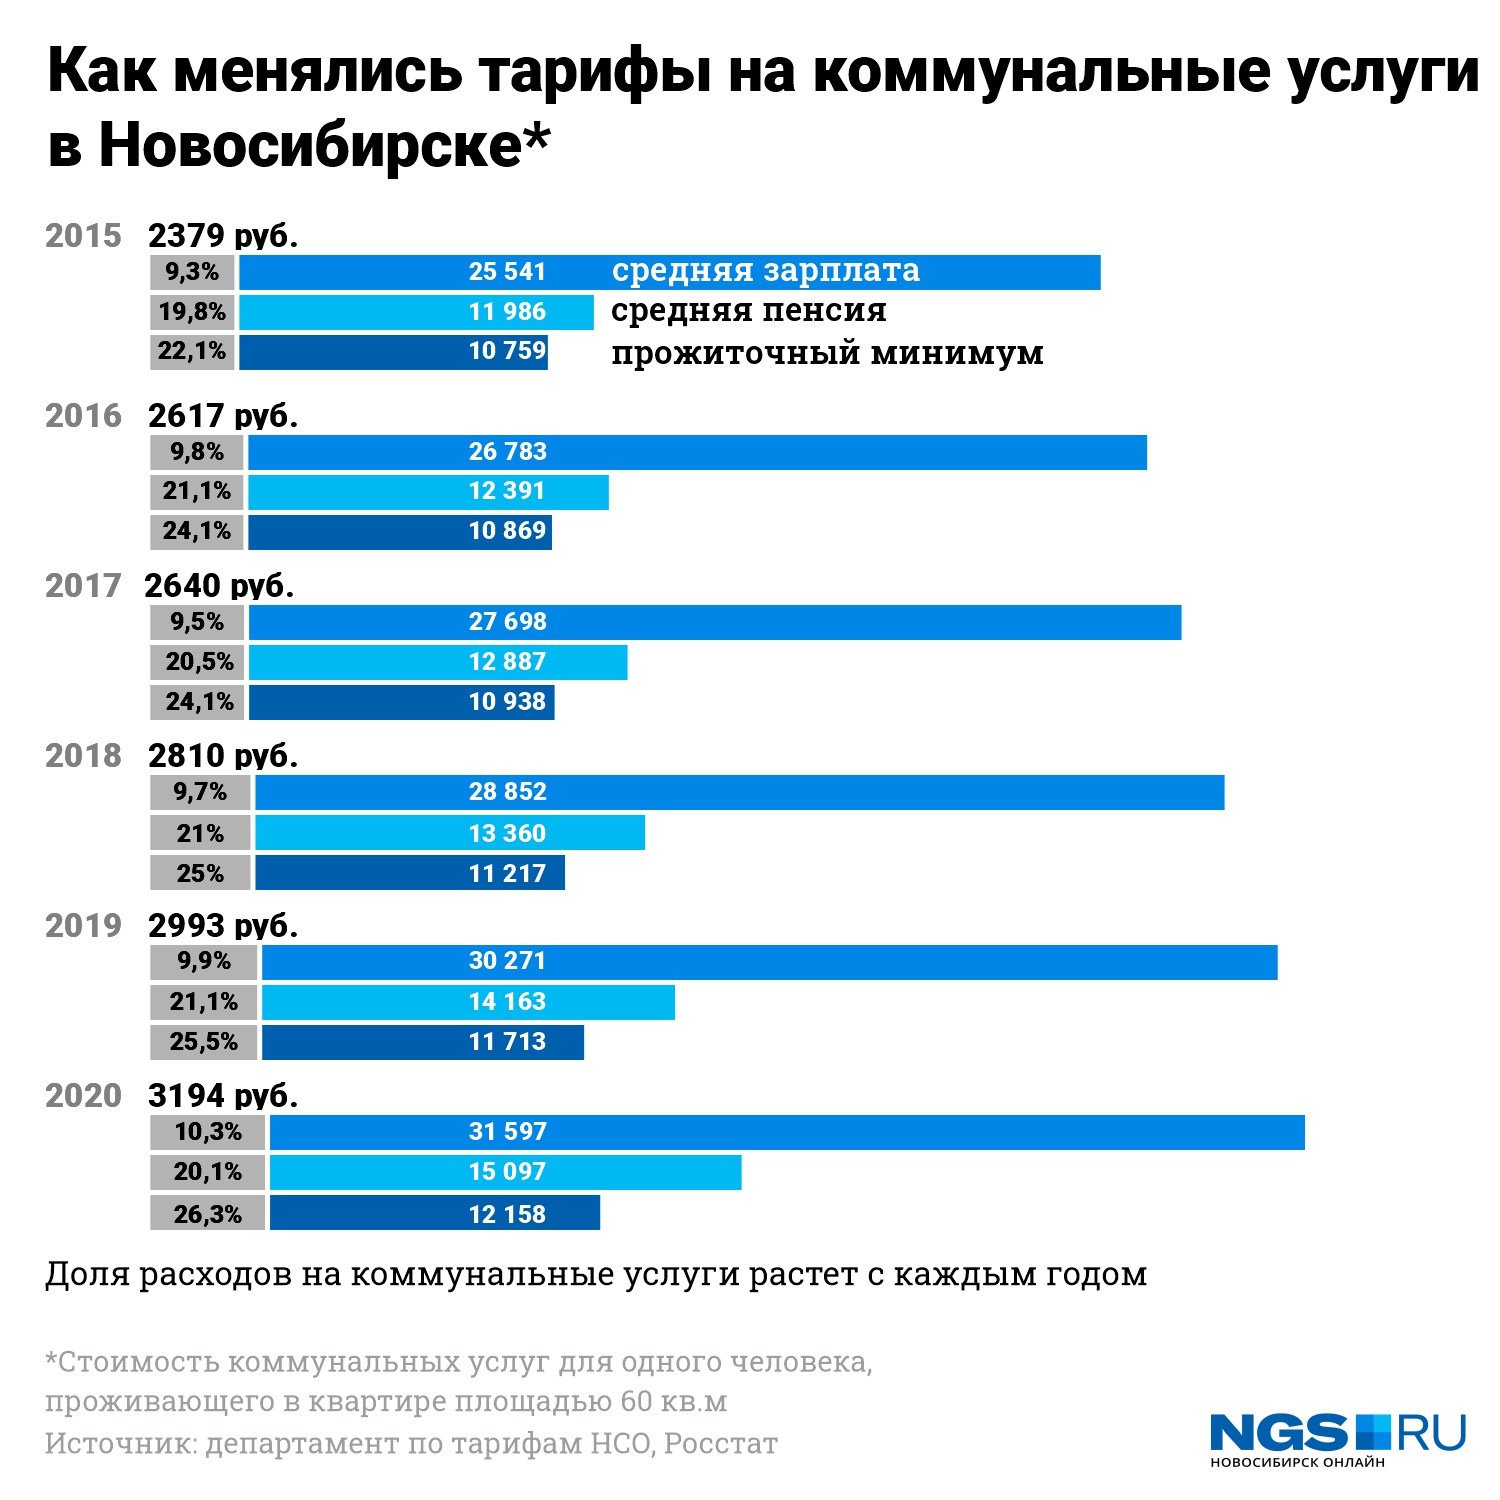 Примерная стоимость коммунальных услуг в Новосибирске в разные годы 